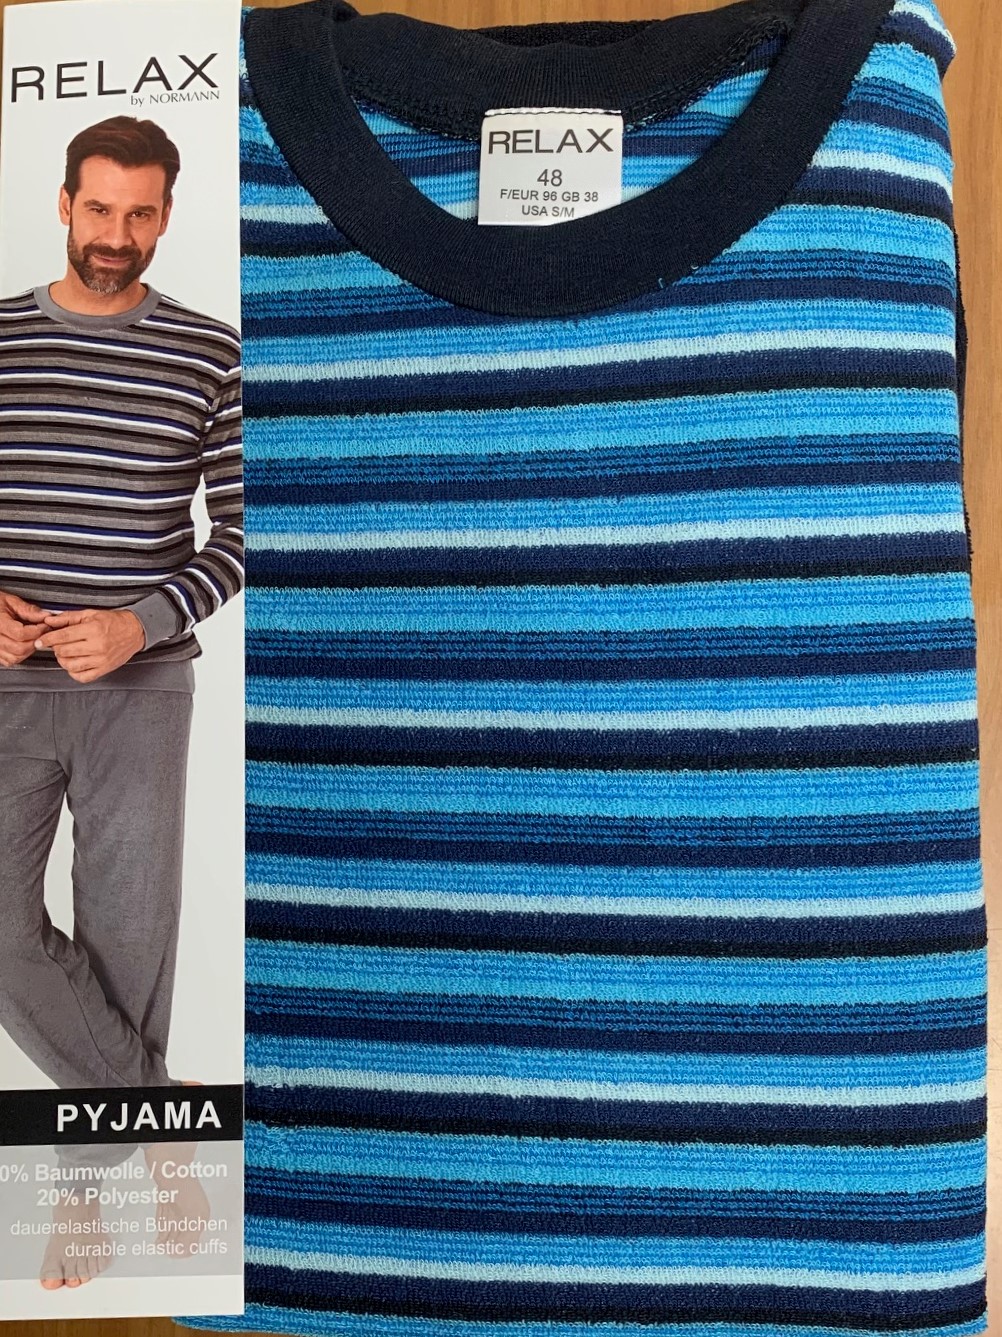 Normann badstof heren pyjama Relax 70133 - Blauw - XL/54